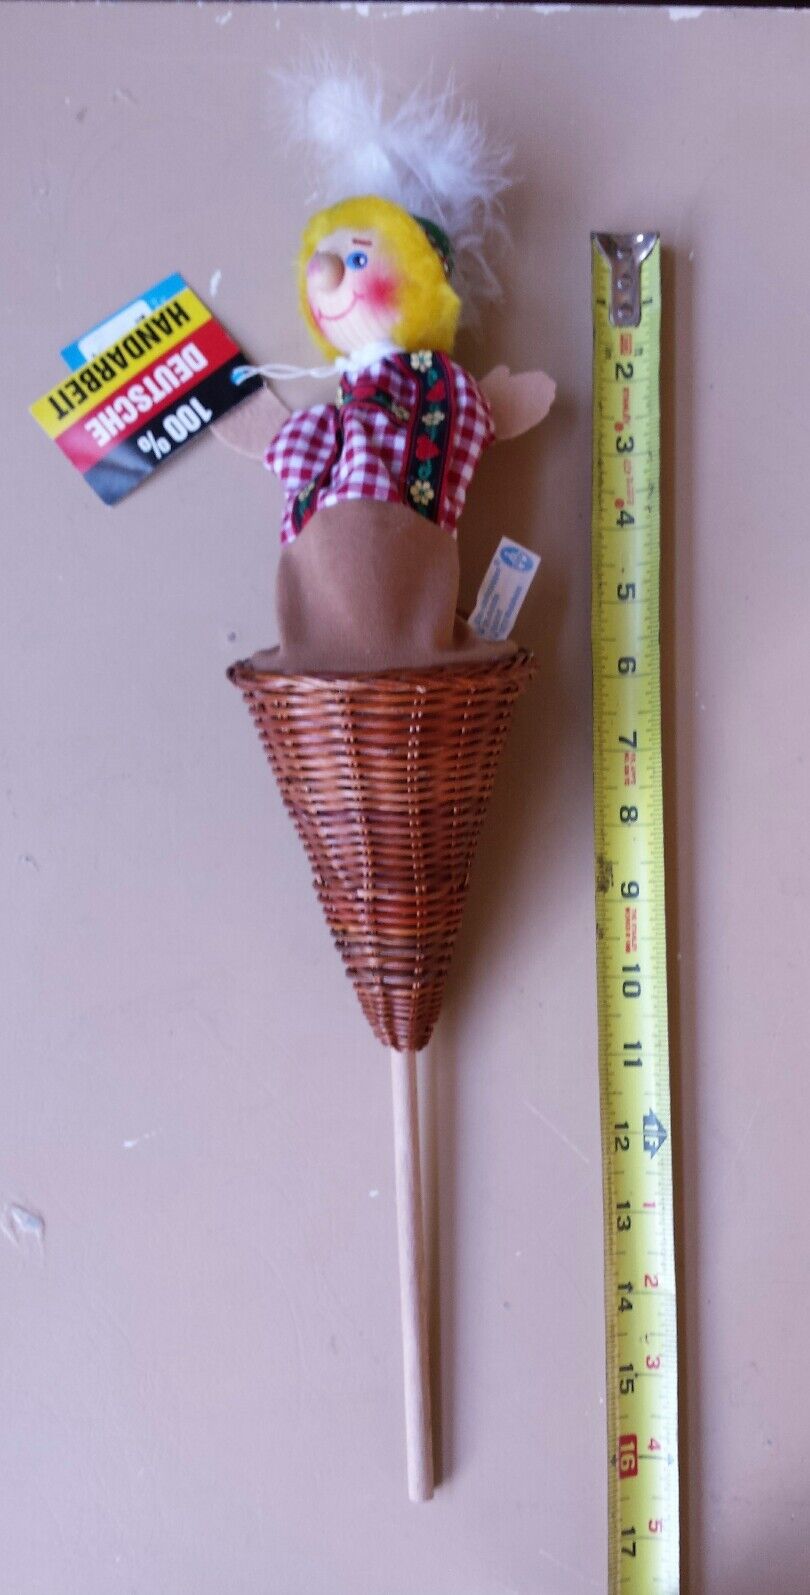 Kersa pop up Puppet wood/wicker/cloth in basket Germany 50160 Seppel